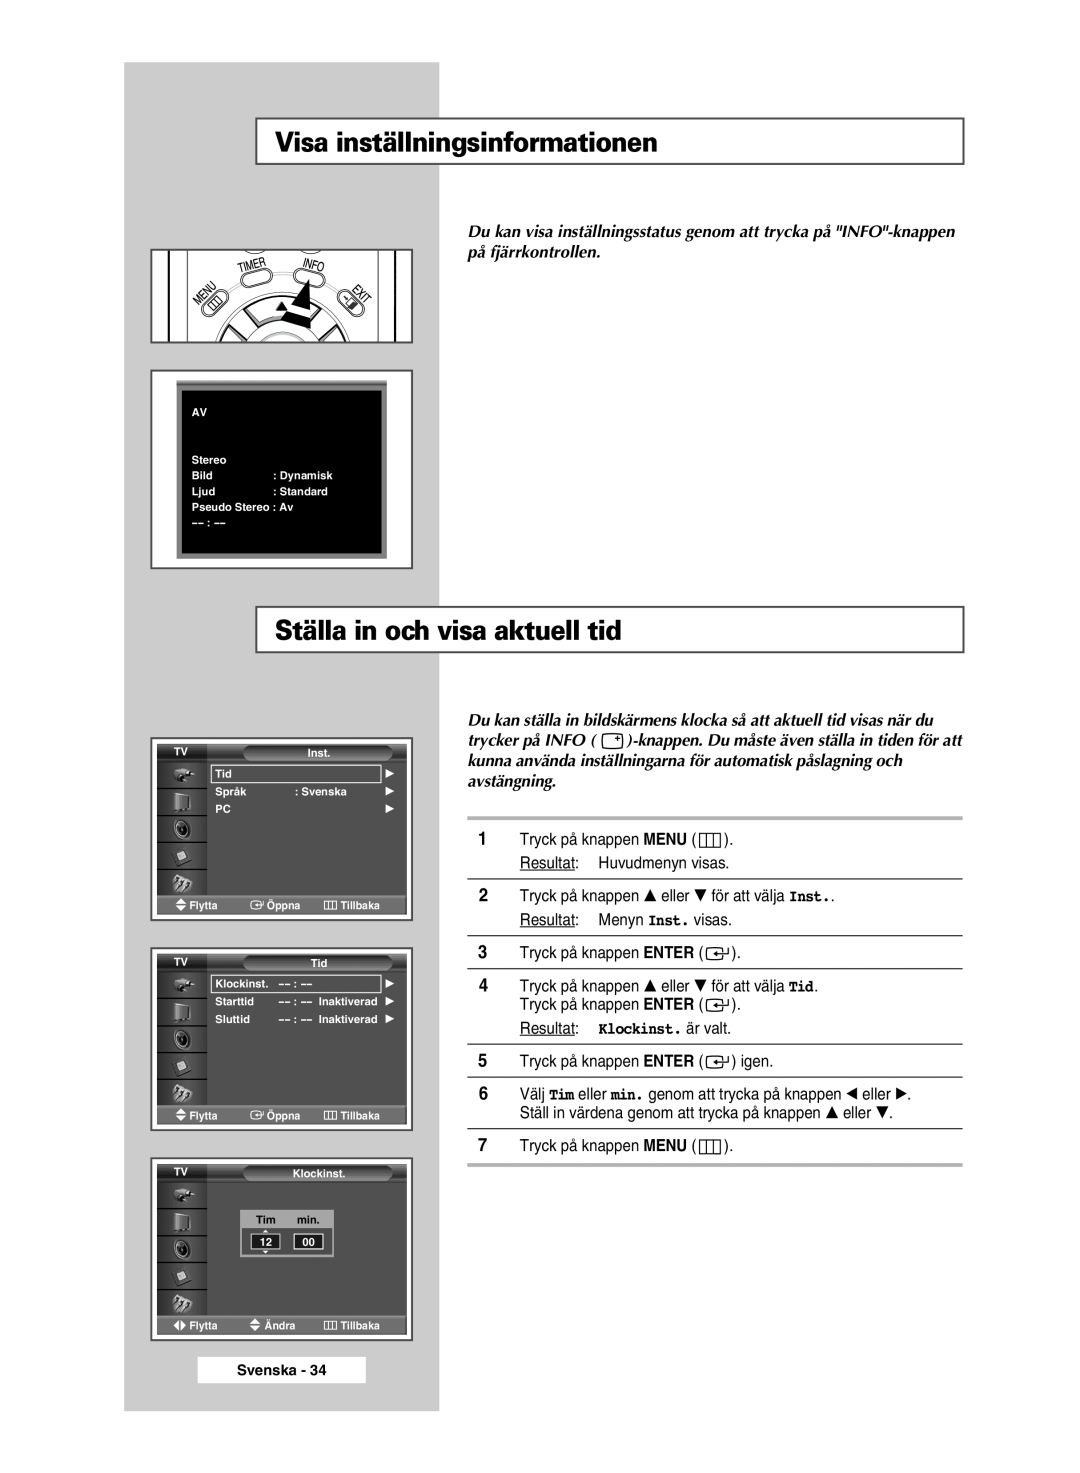 Samsung PPM50M5HSX/EDC manual Visa inställningsinformationen, Ställa in och visa aktuell tid, Resultat Klockinst. är valt 